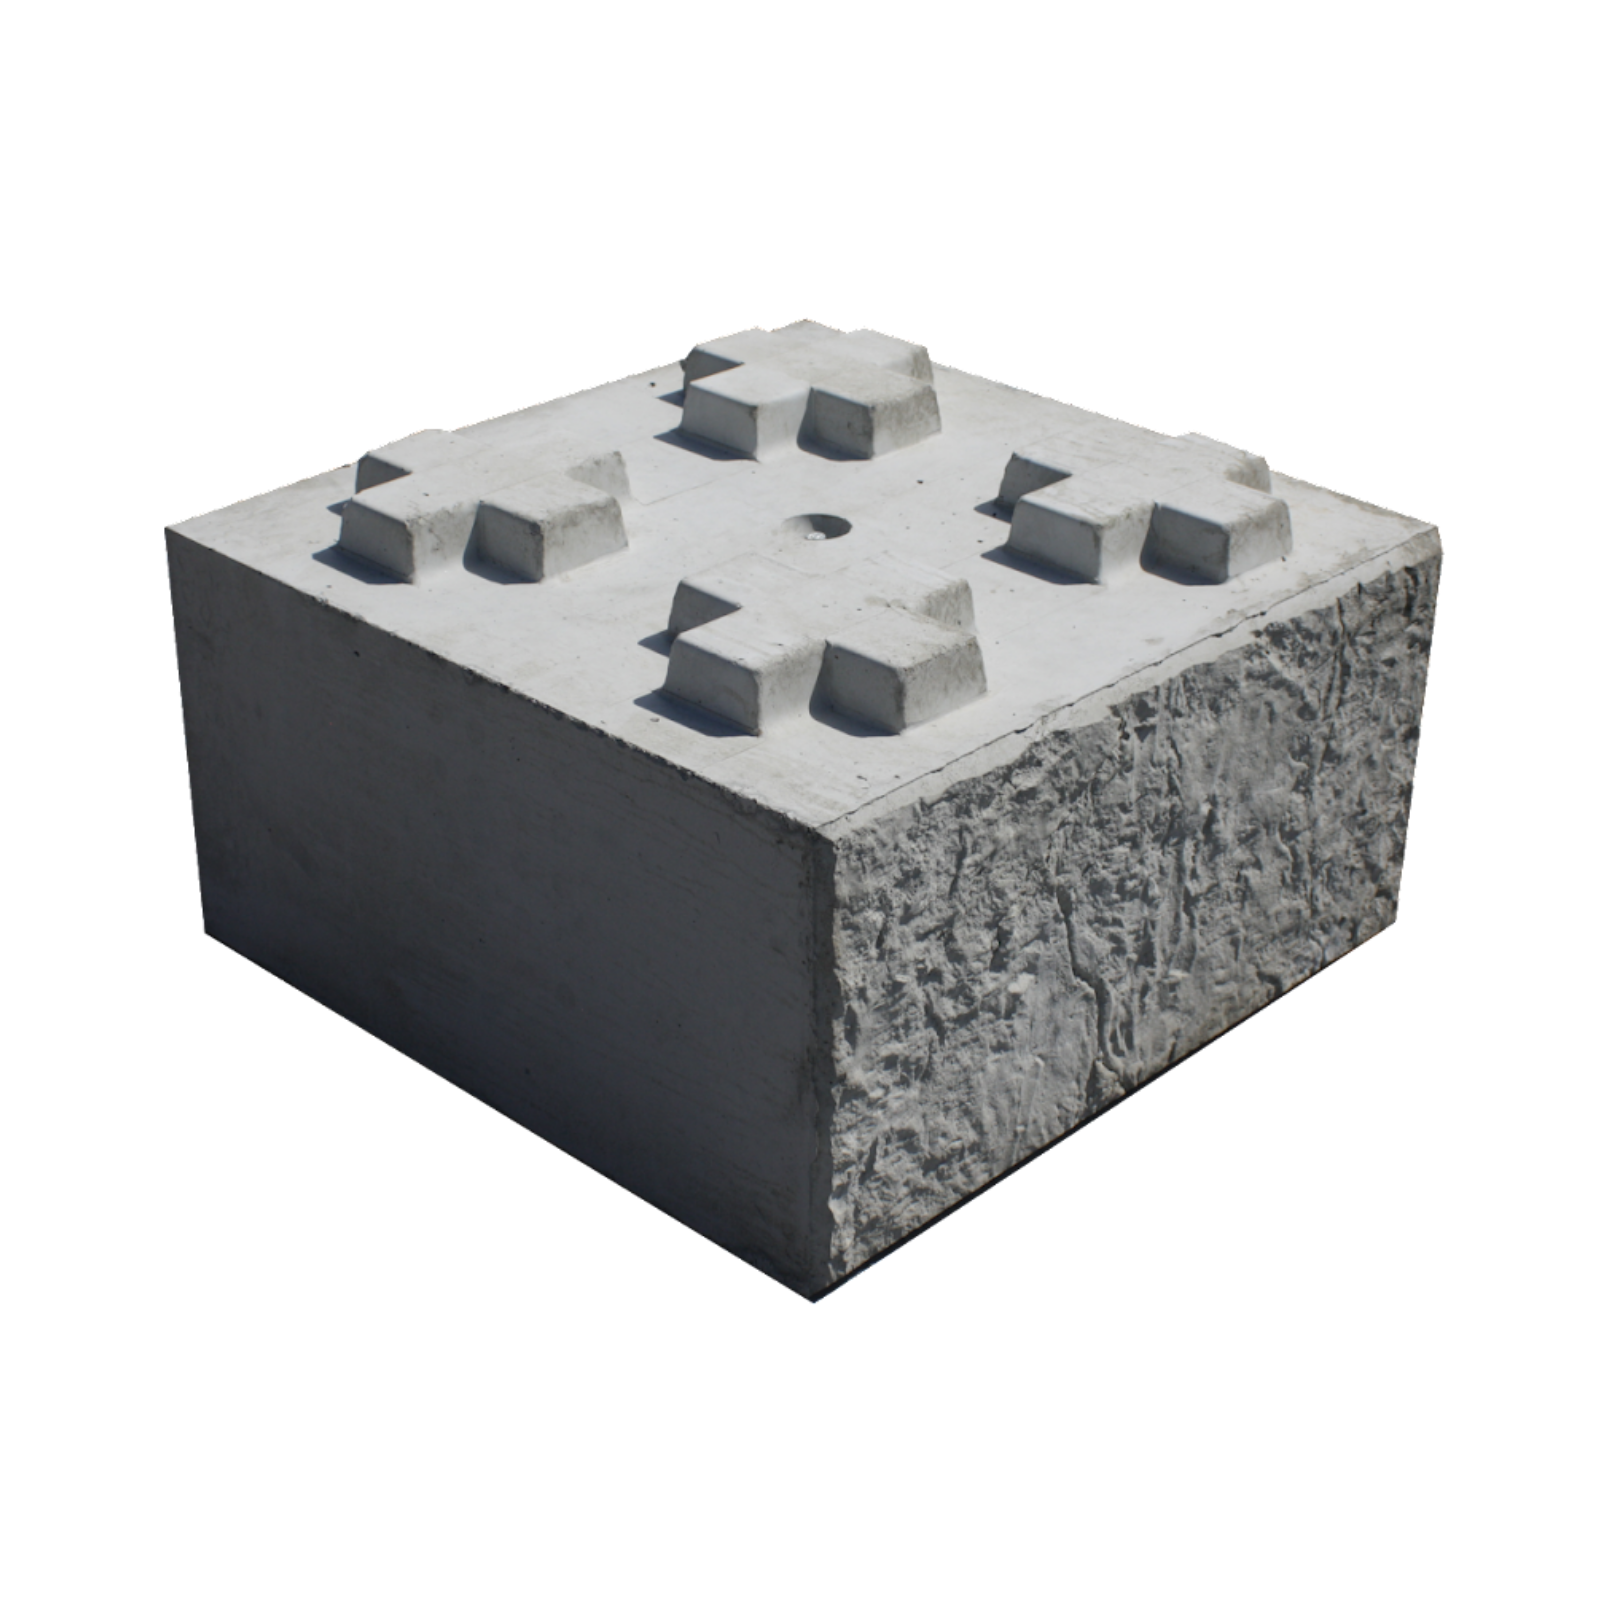 Perspective shot of a 800 base Stonebloc concrete block 